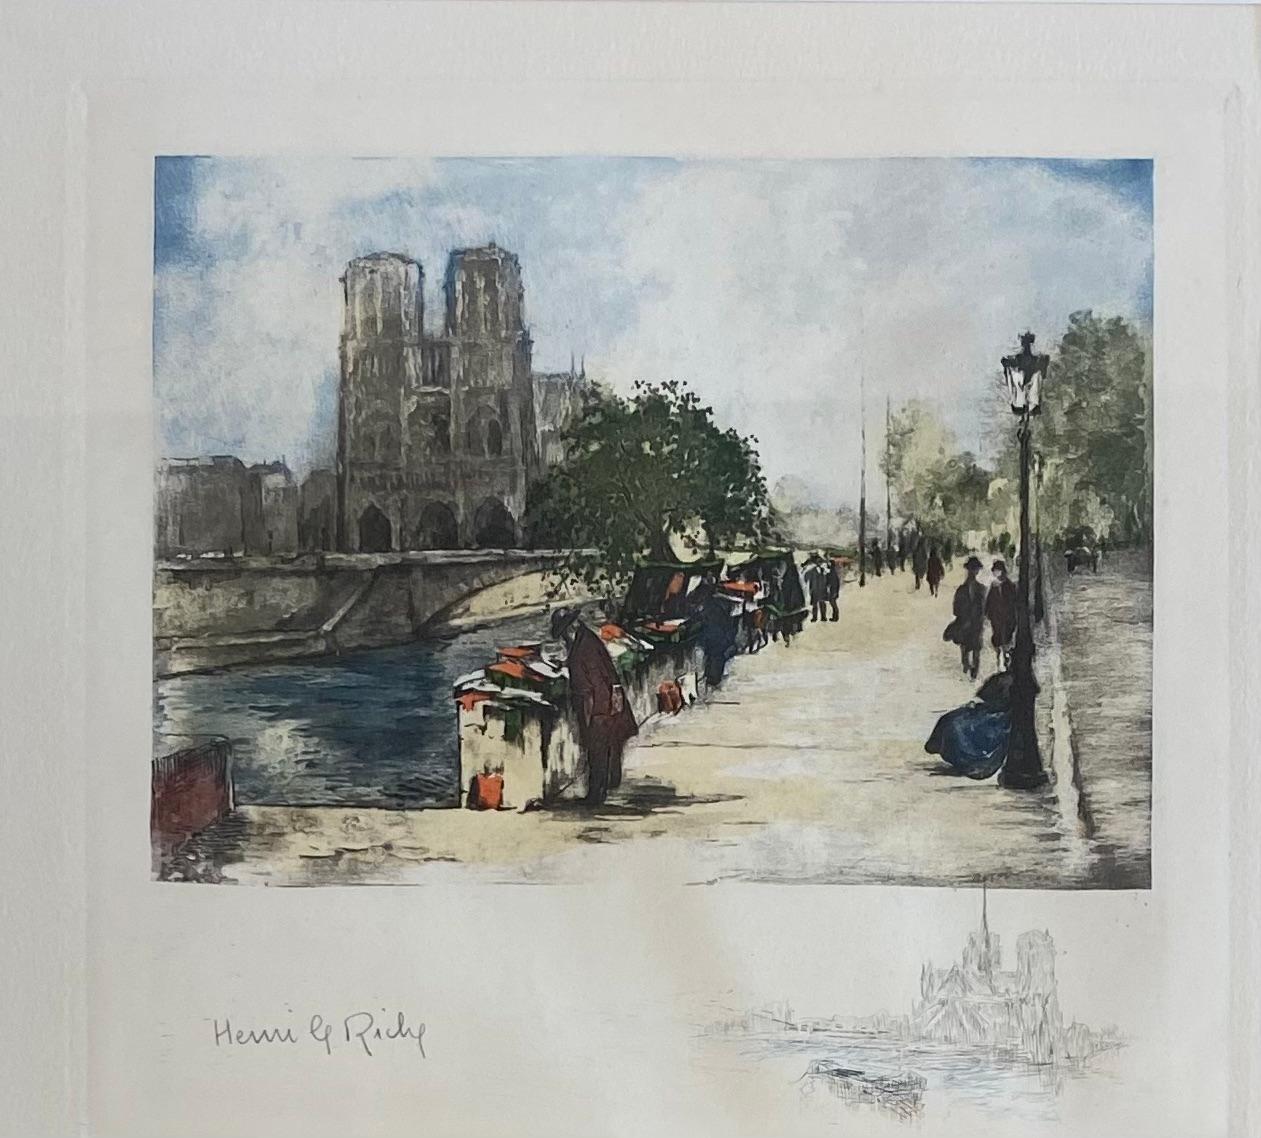 Une belle aquarelle originale représentant la cathédrale Notre-Dame et la Seine à Paris, France. Peint par Henri Le Riche. 

Signé à la main en bas à gauche, un dessin au crayon de la cathédrale et de la Seine figure également en bas à droite.